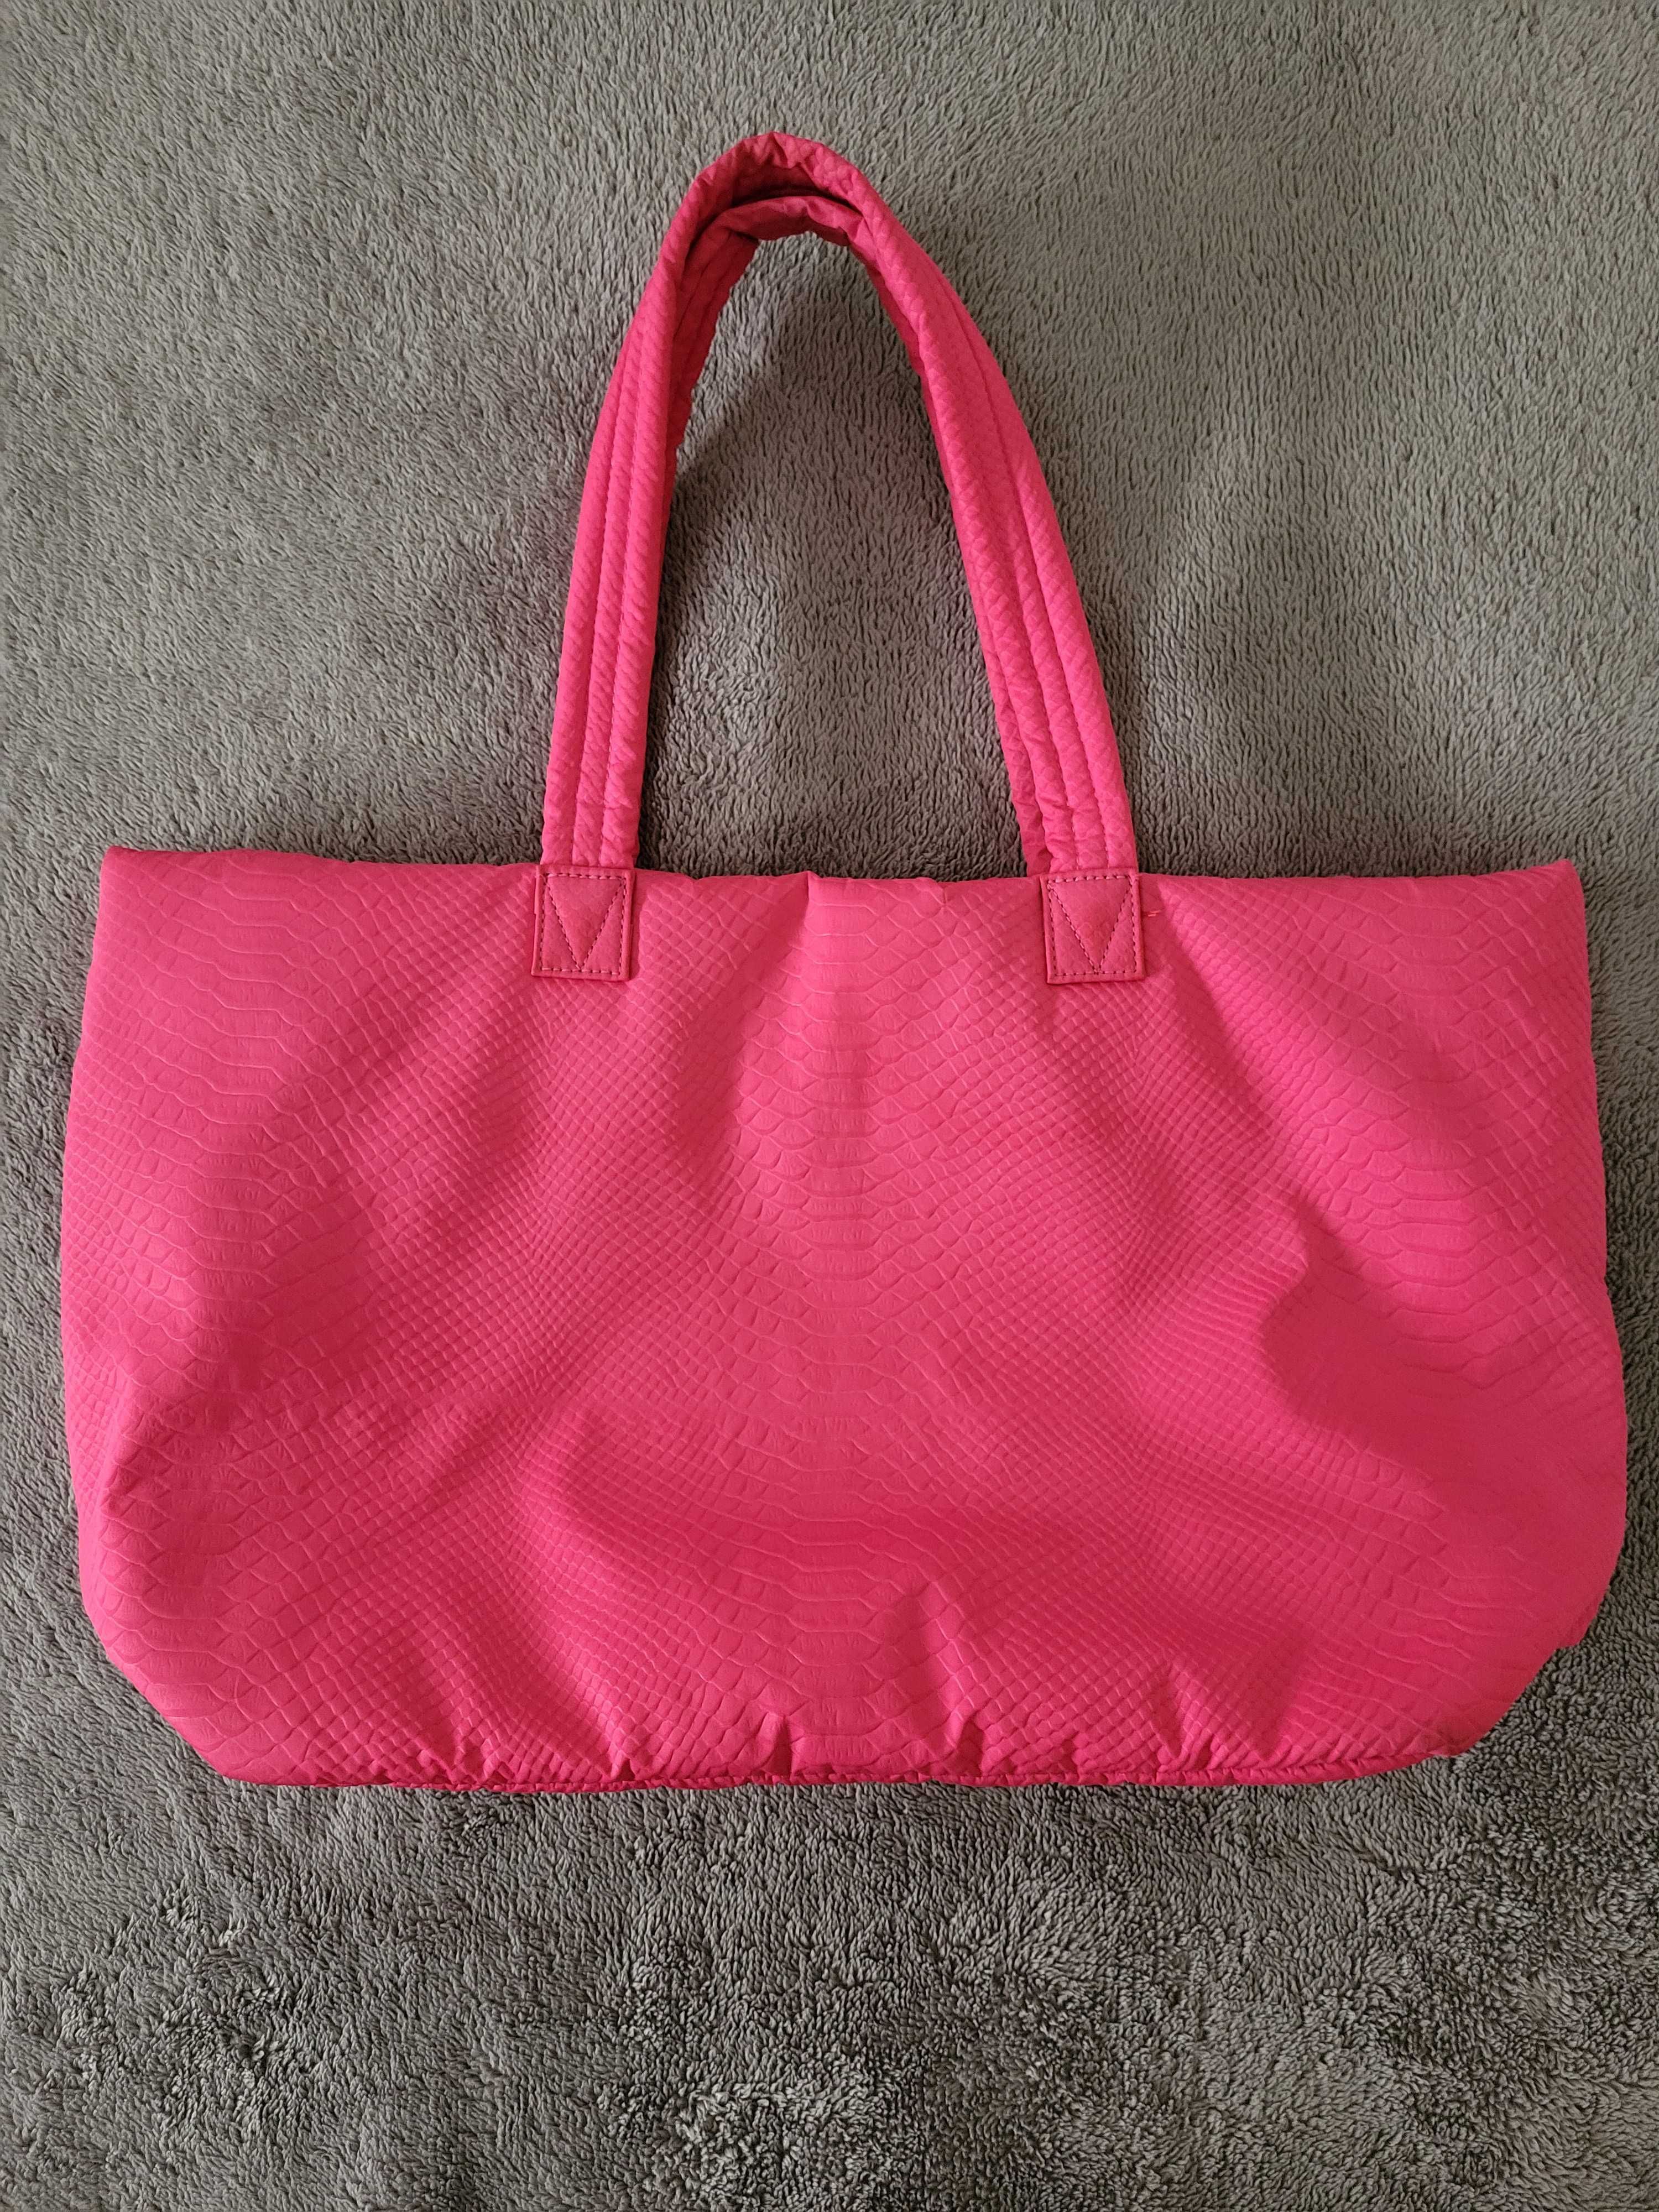 Pink Victoria's Secret bag